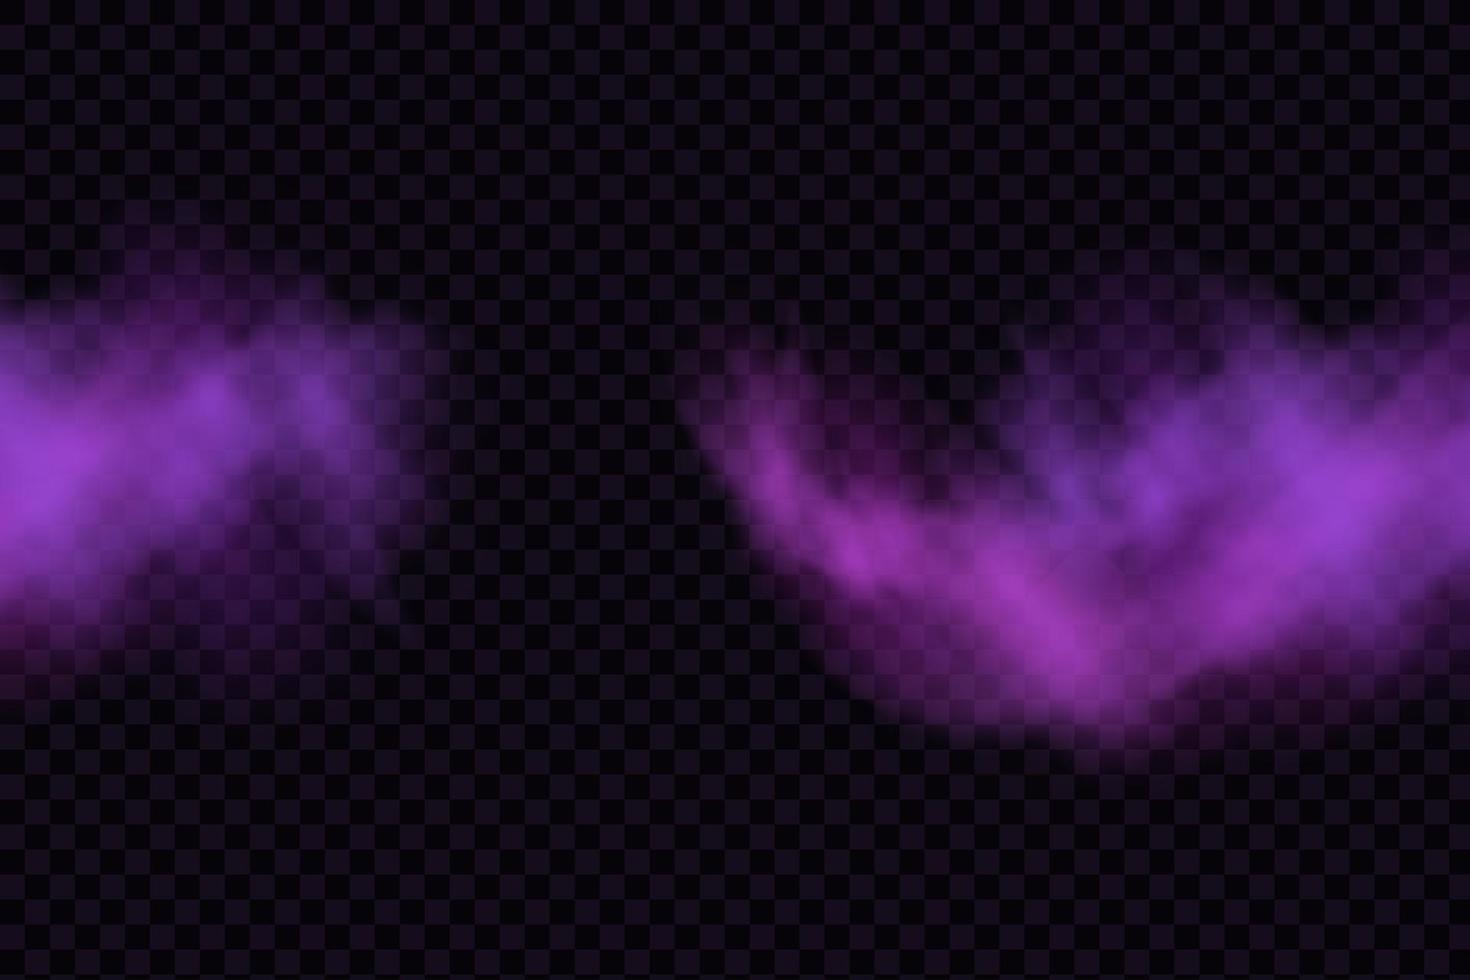 realistischer gruseliger mystischer nebel in der nacht halloween. violettes Giftgas, Staub- und Raucheffekt. vektor